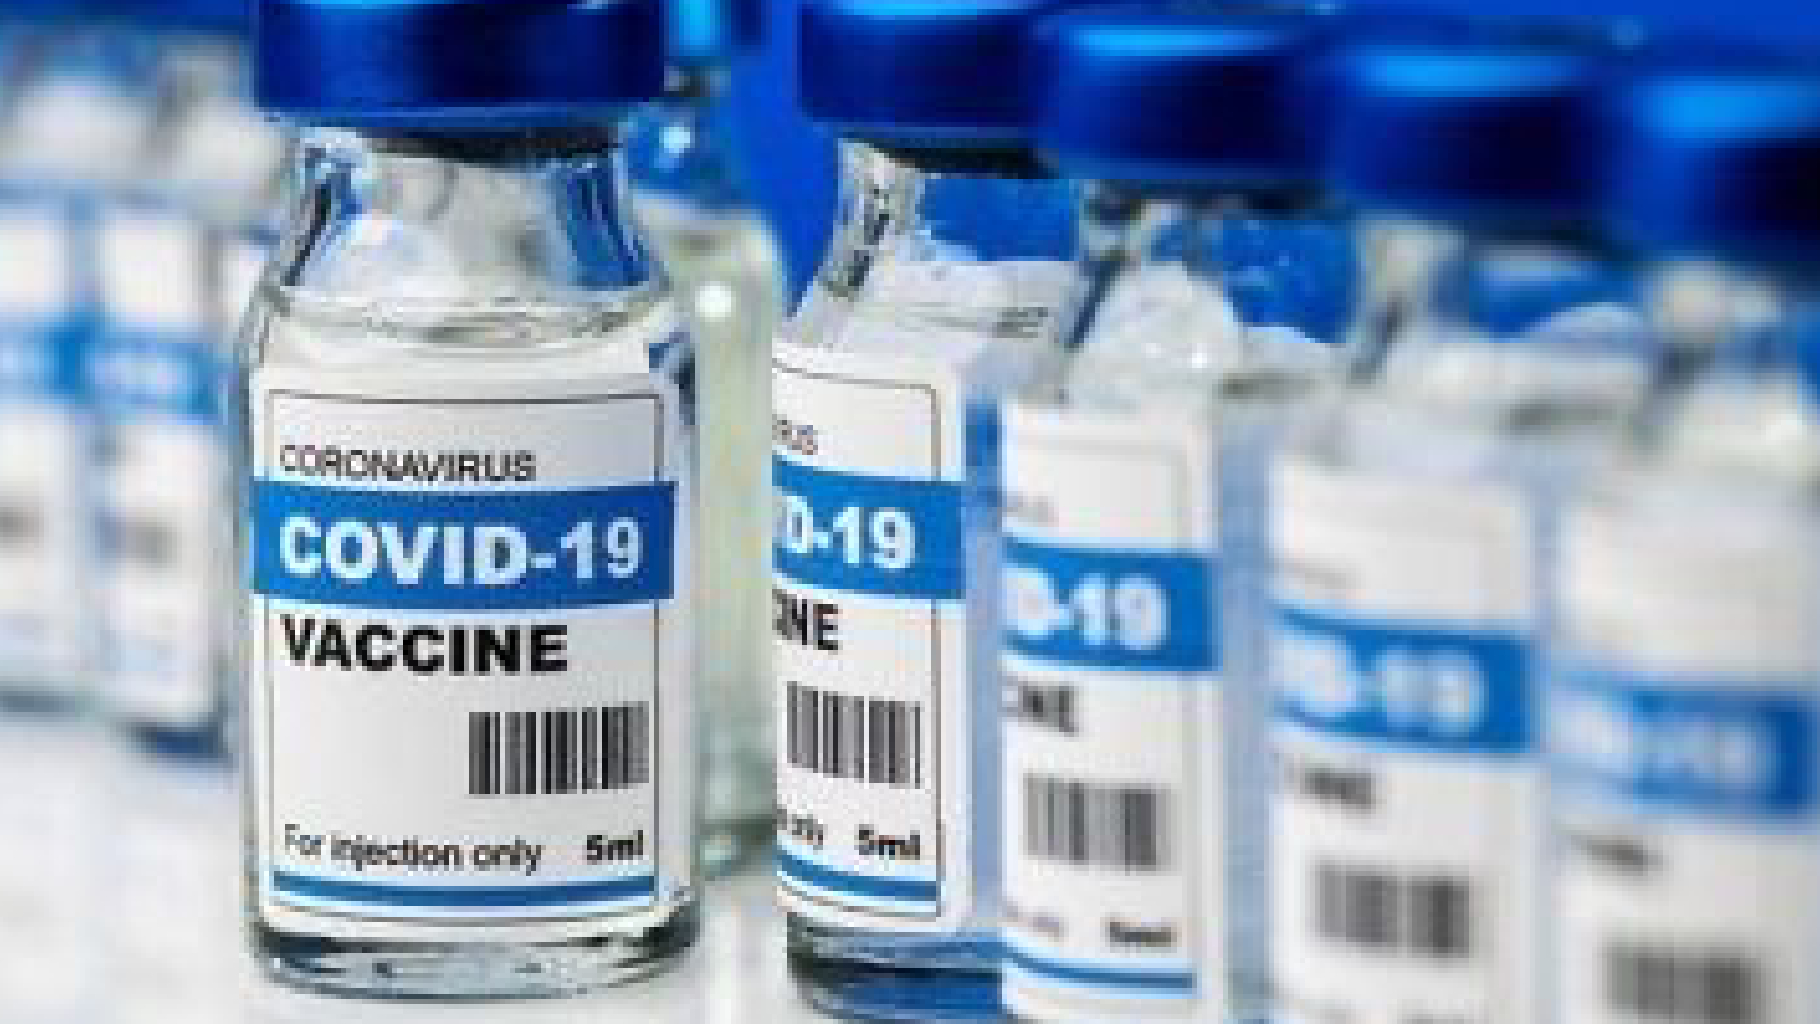 Covid, lo studio milioni di vaccinati: miocardite, pericardite, trombosi… Tutte le reazioni avverse registrate